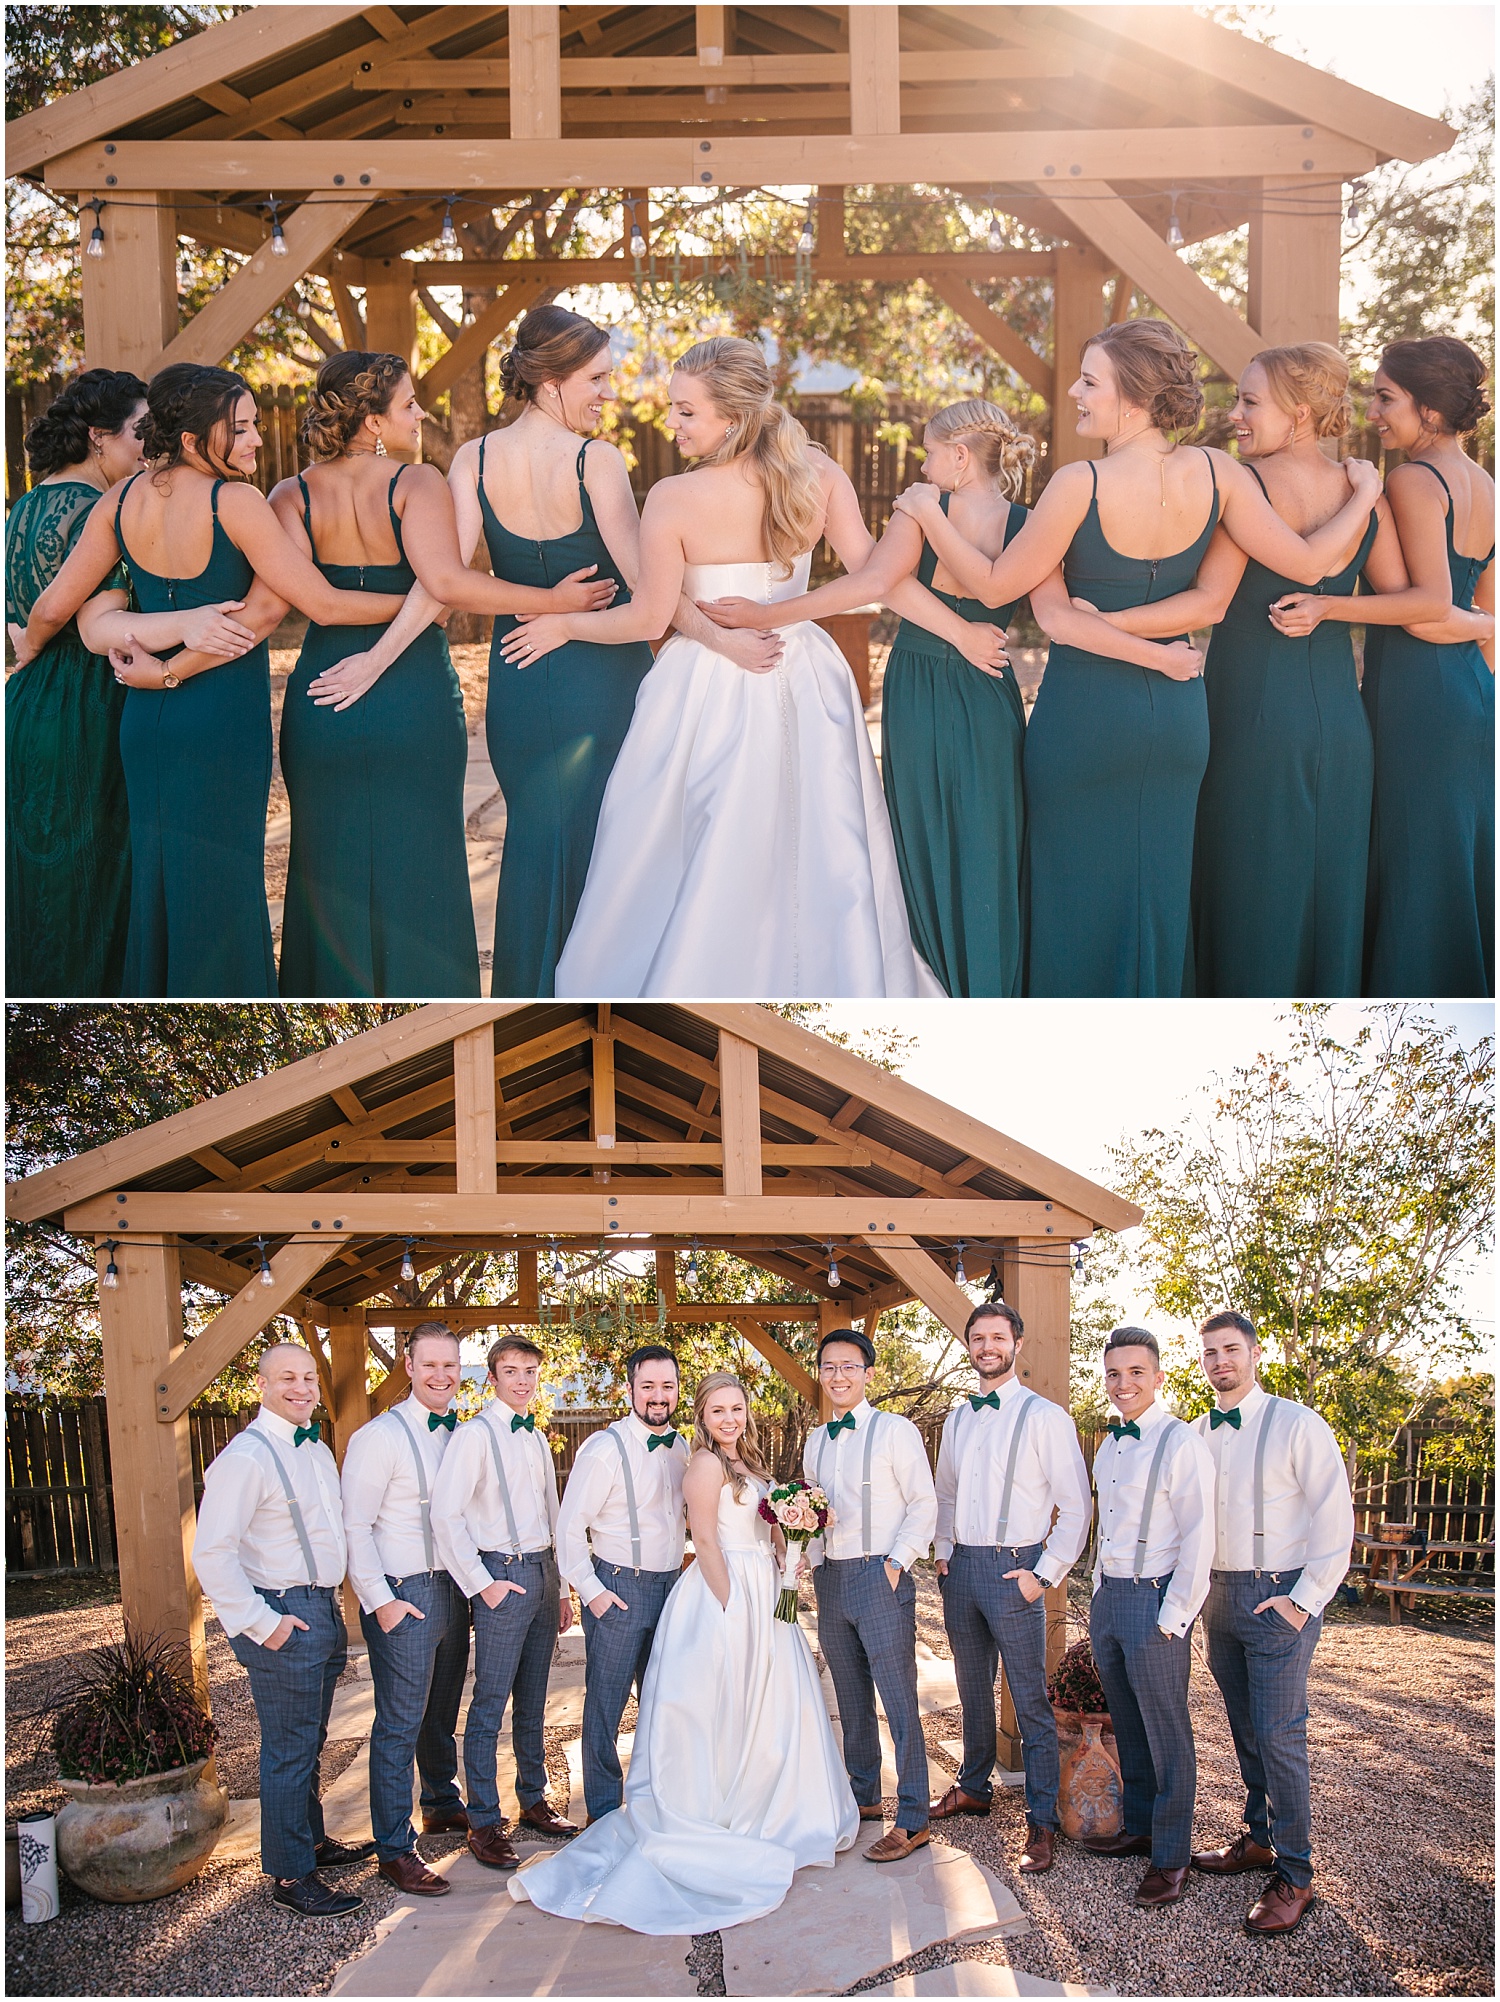 Emerald green and gray wedding party | Albuquerque wedding photographer